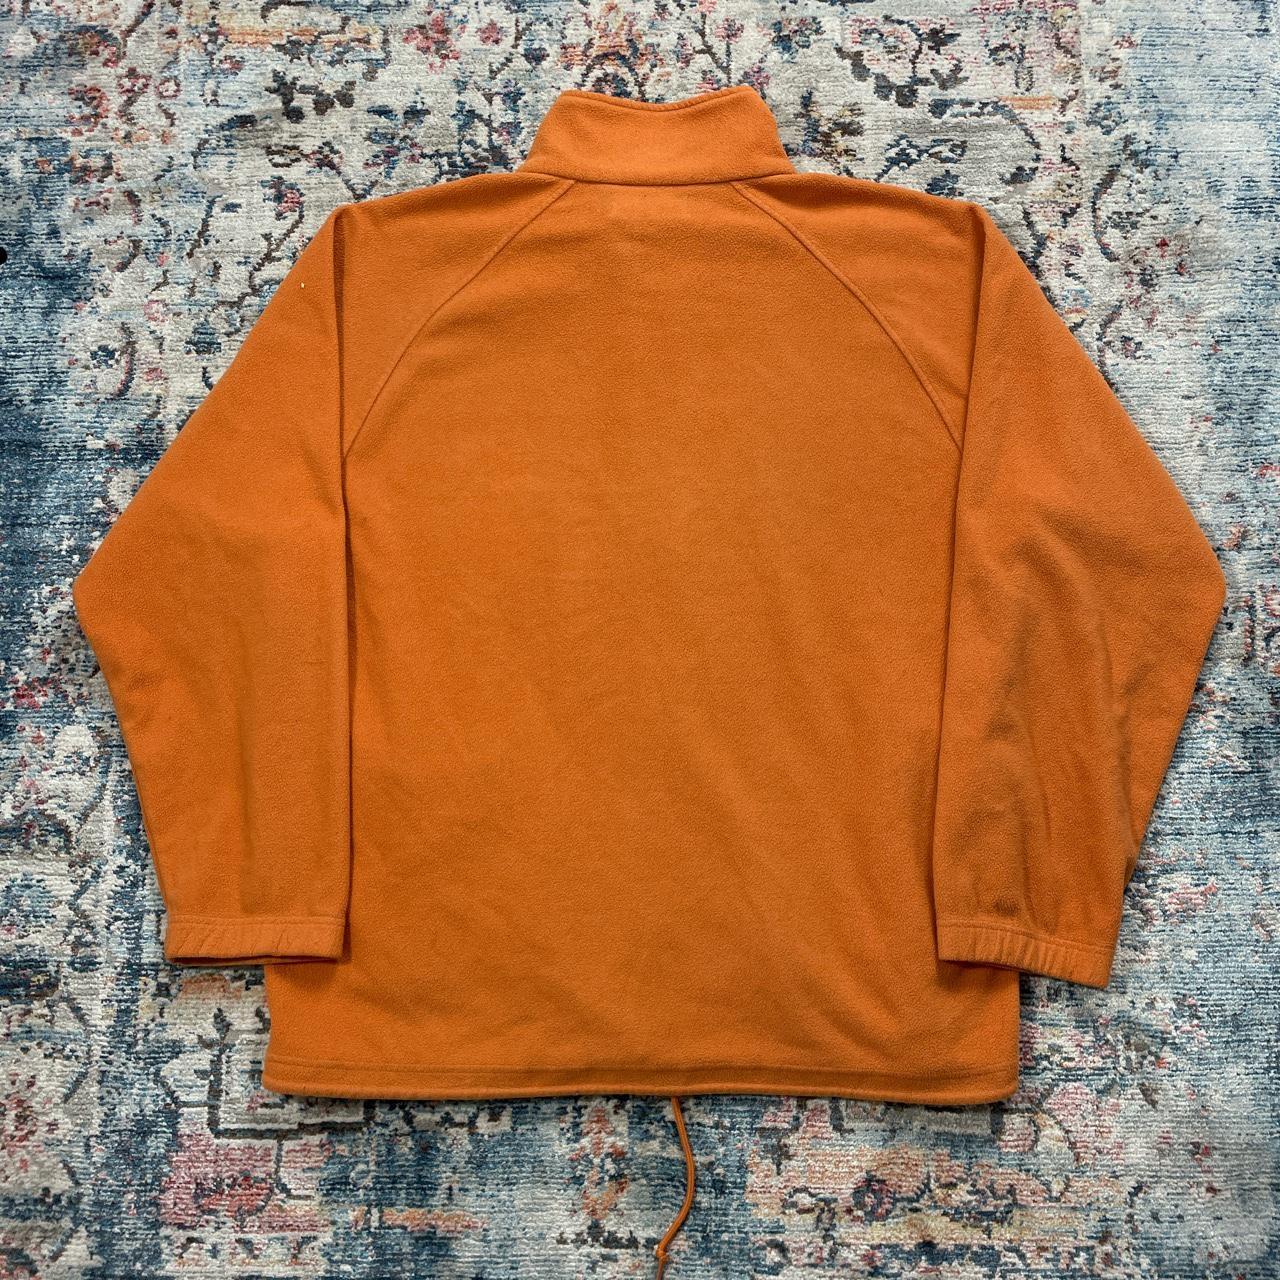 Vintage Kappa Orange Fleece